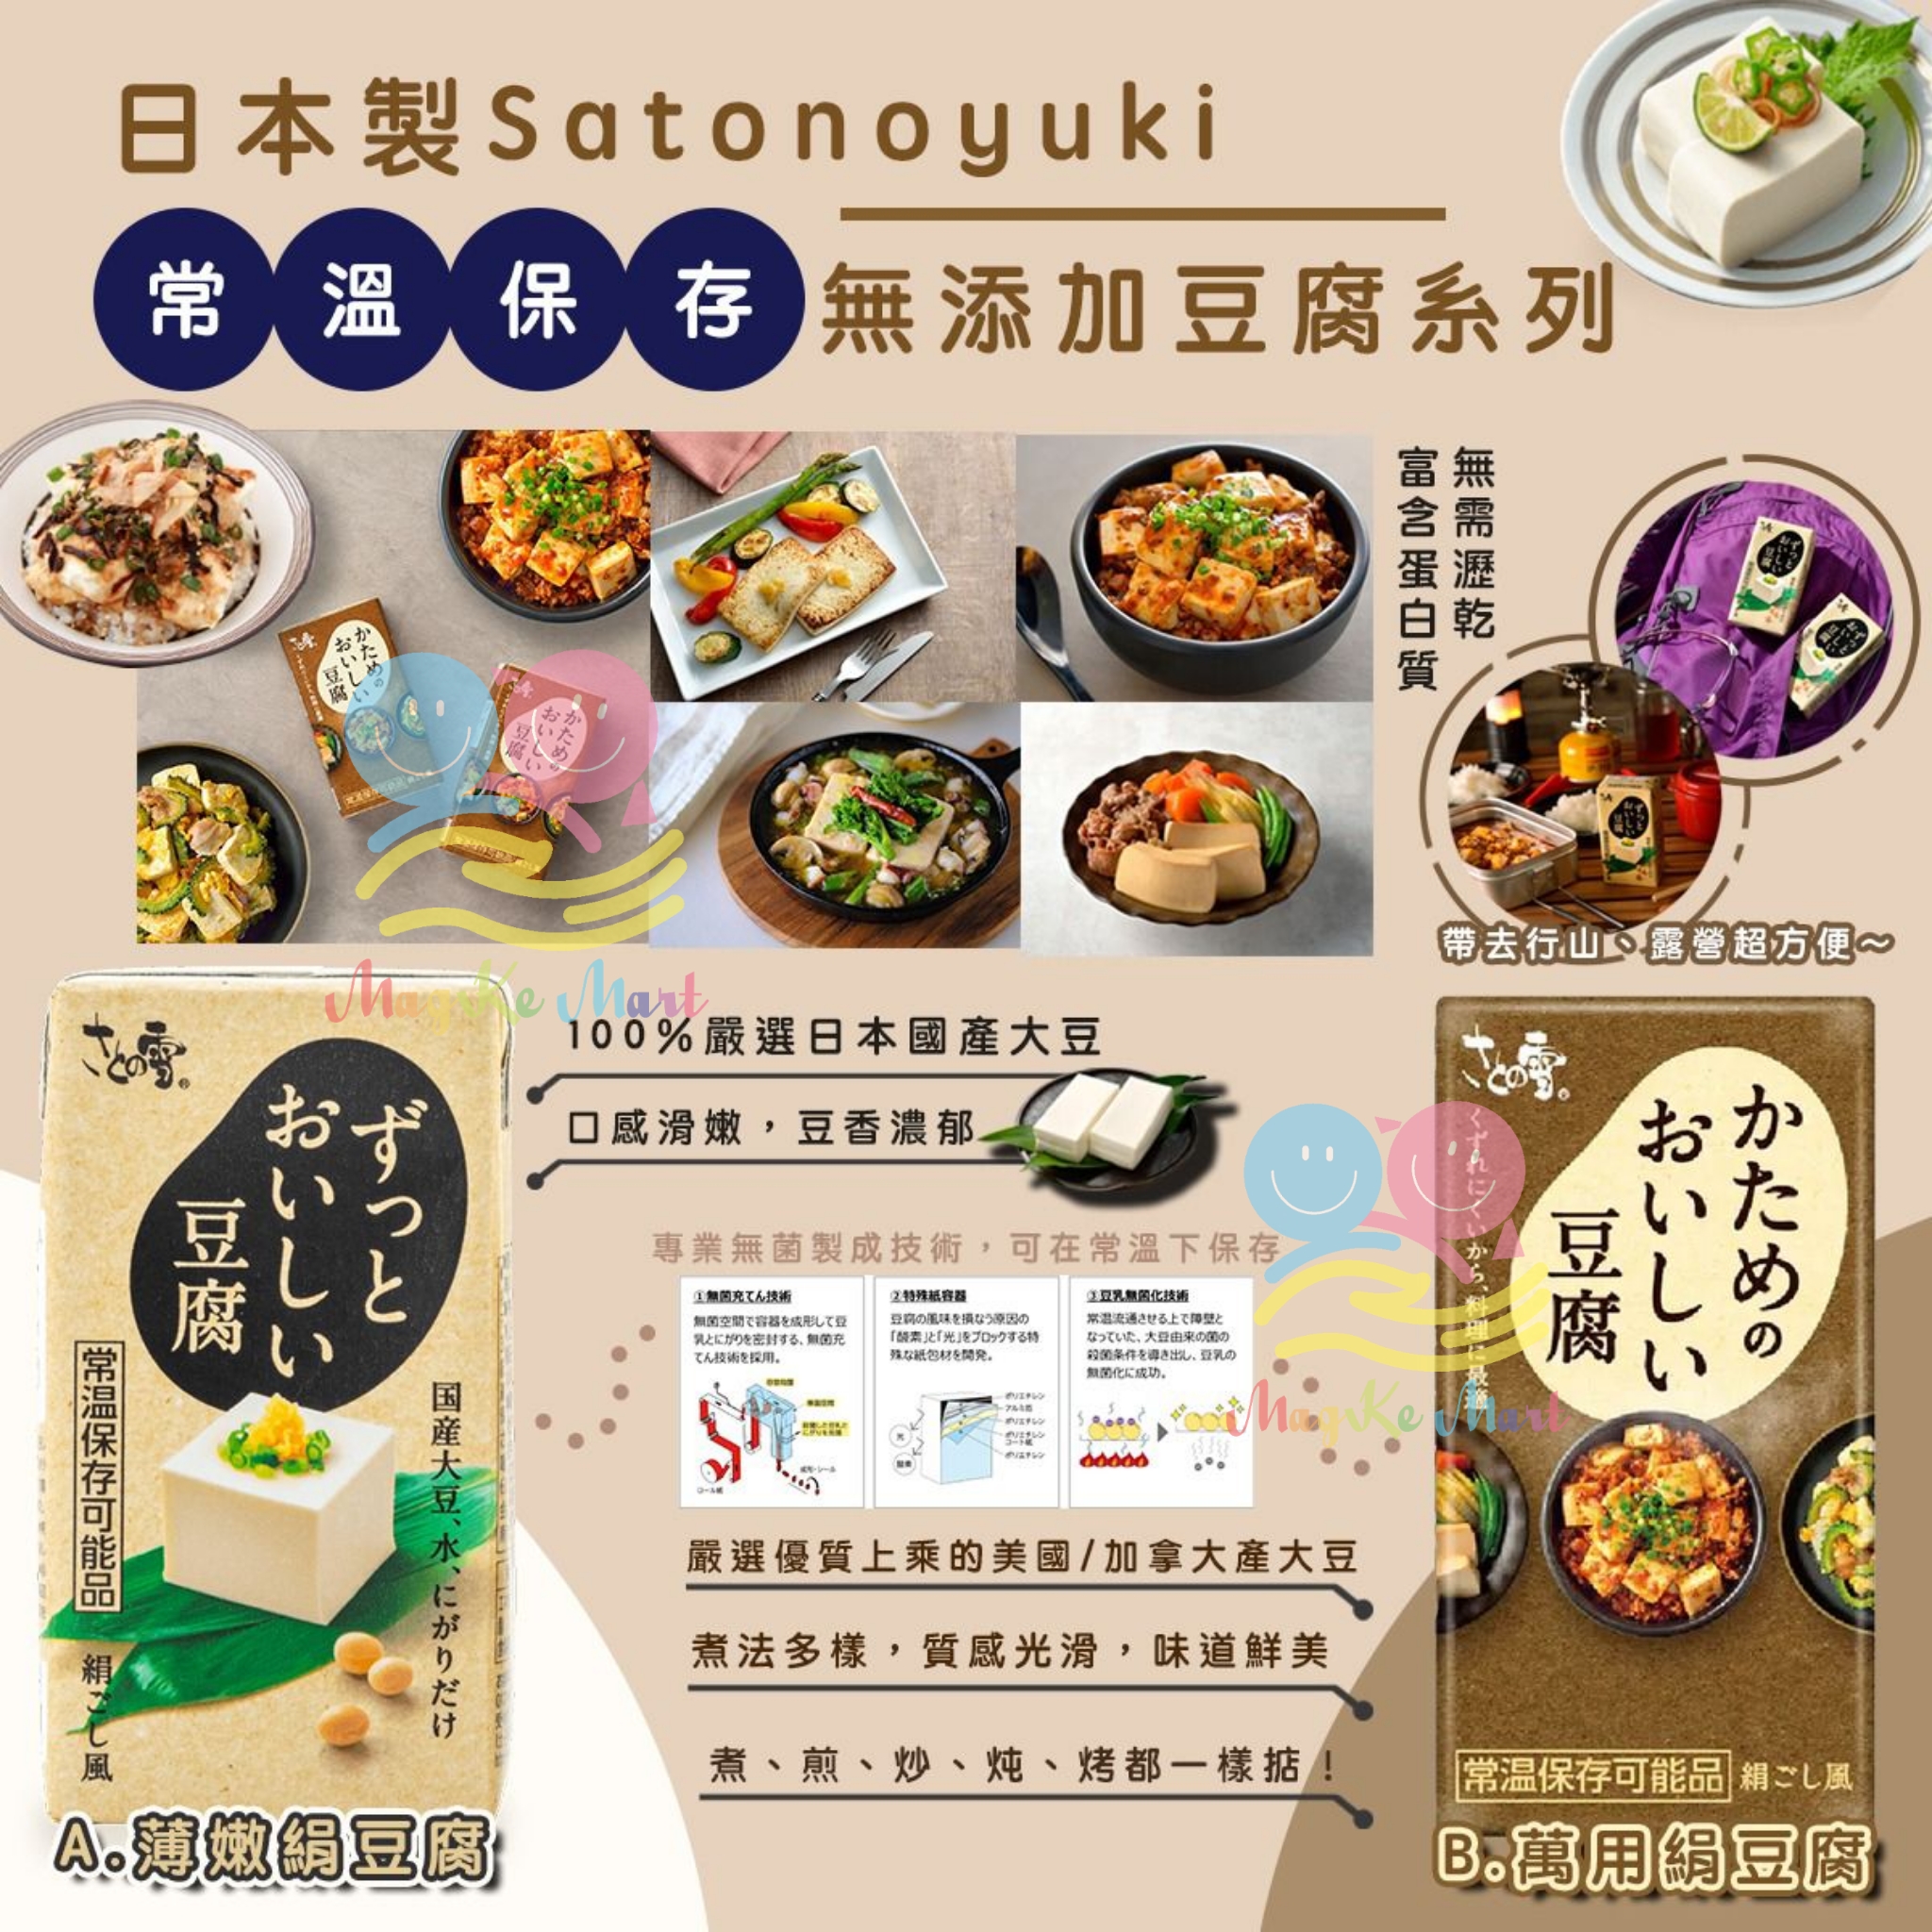 日本 Satonoyuki 常溫保存無添加豆腐系列 300g